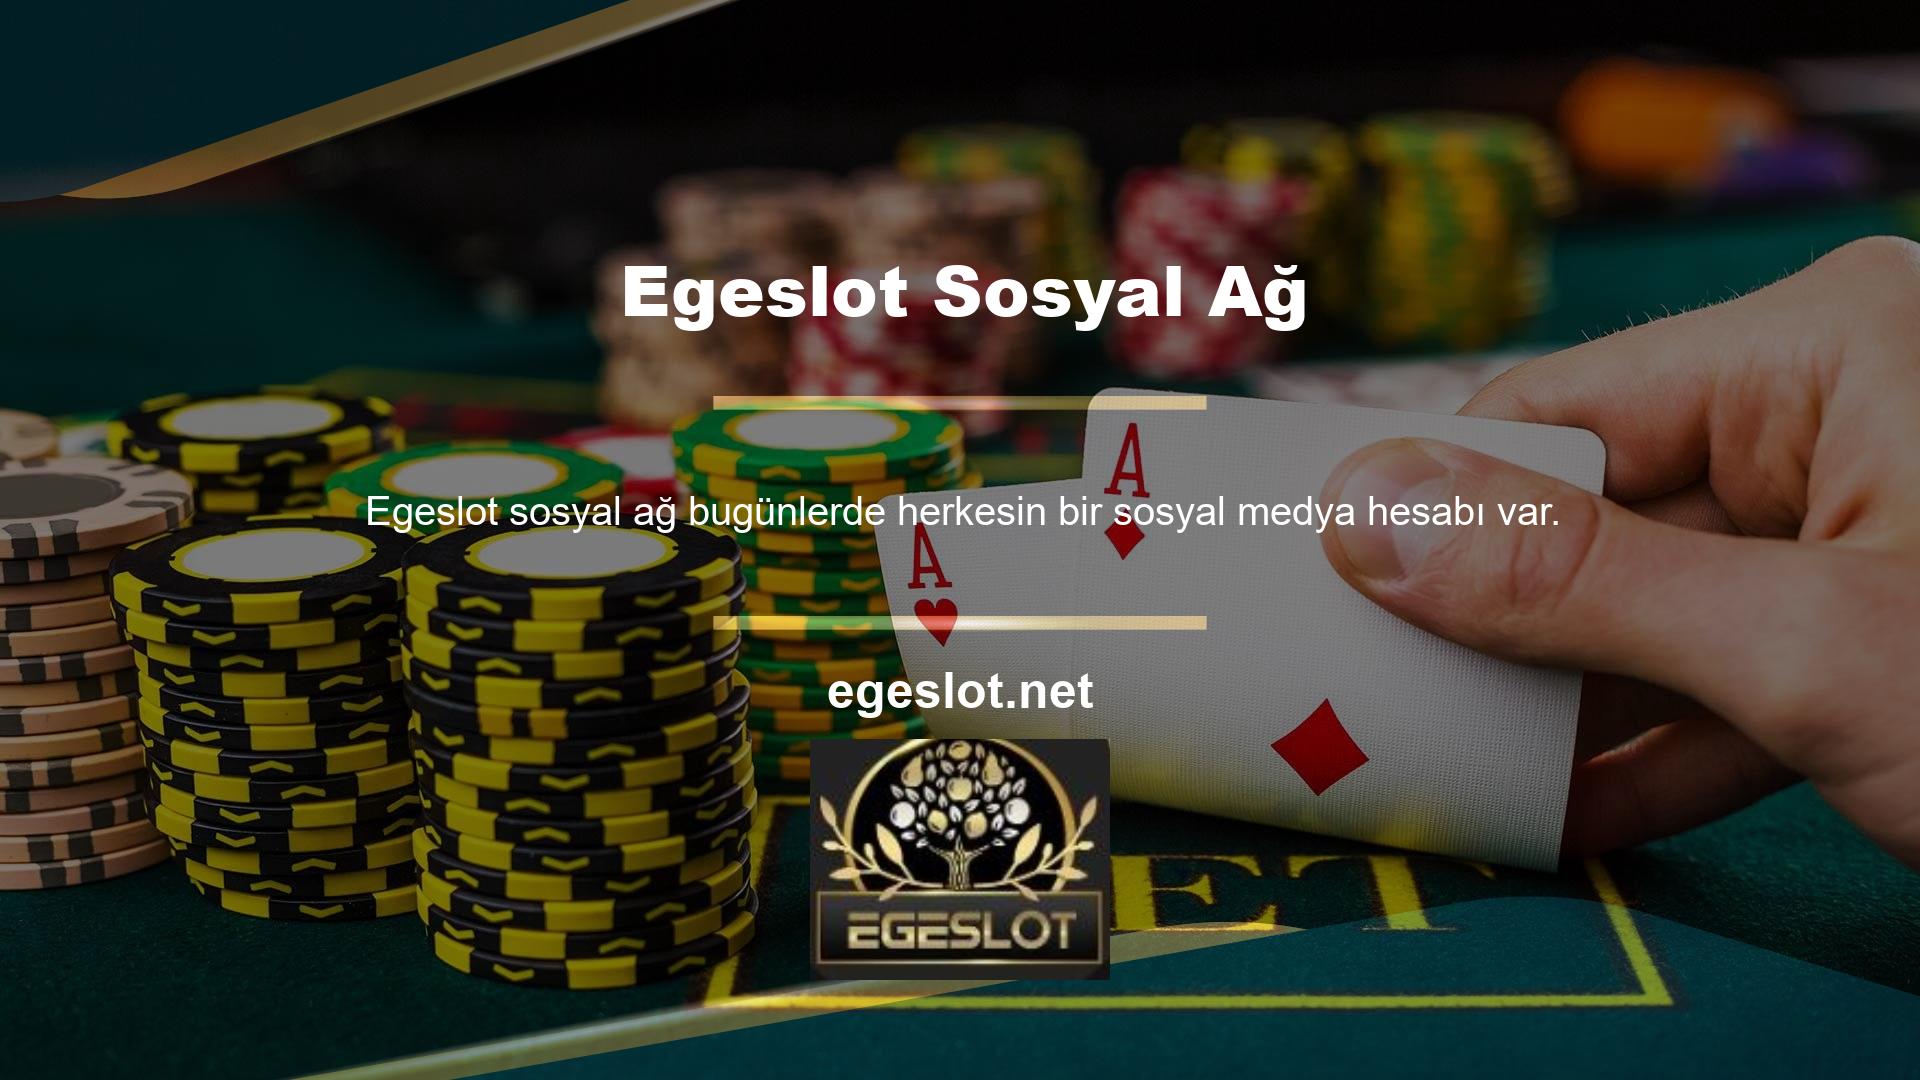 Egeslot bahis sitesi aynı zamanda en güncel sosyal medya platformlarını da kullanmaktadır